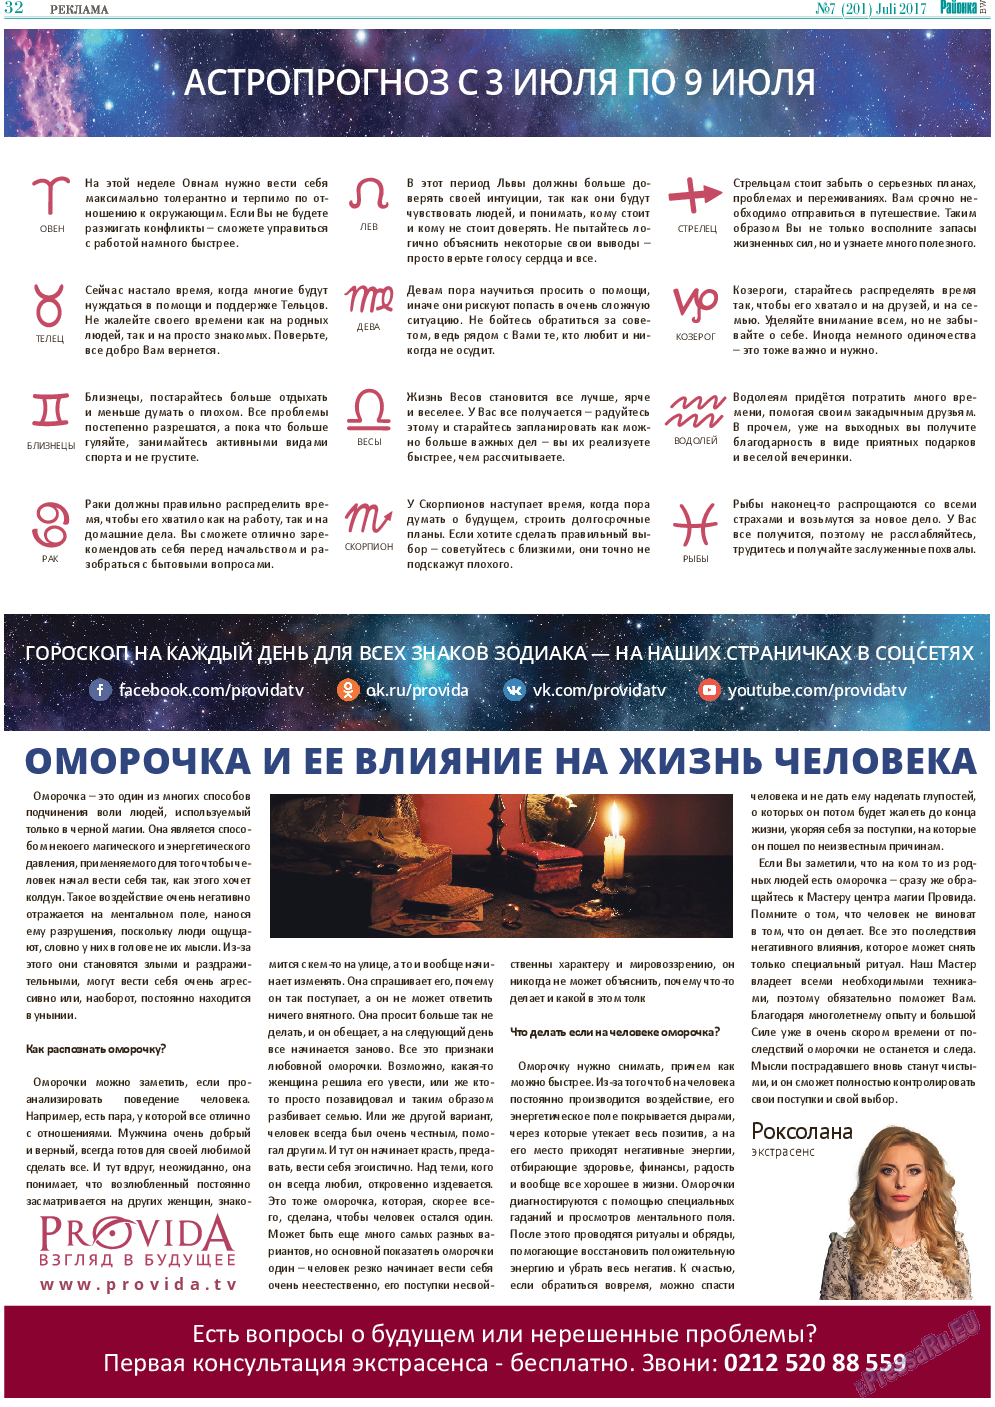 Районка-Süd-West (газета). 2017 год, номер 7, стр. 32